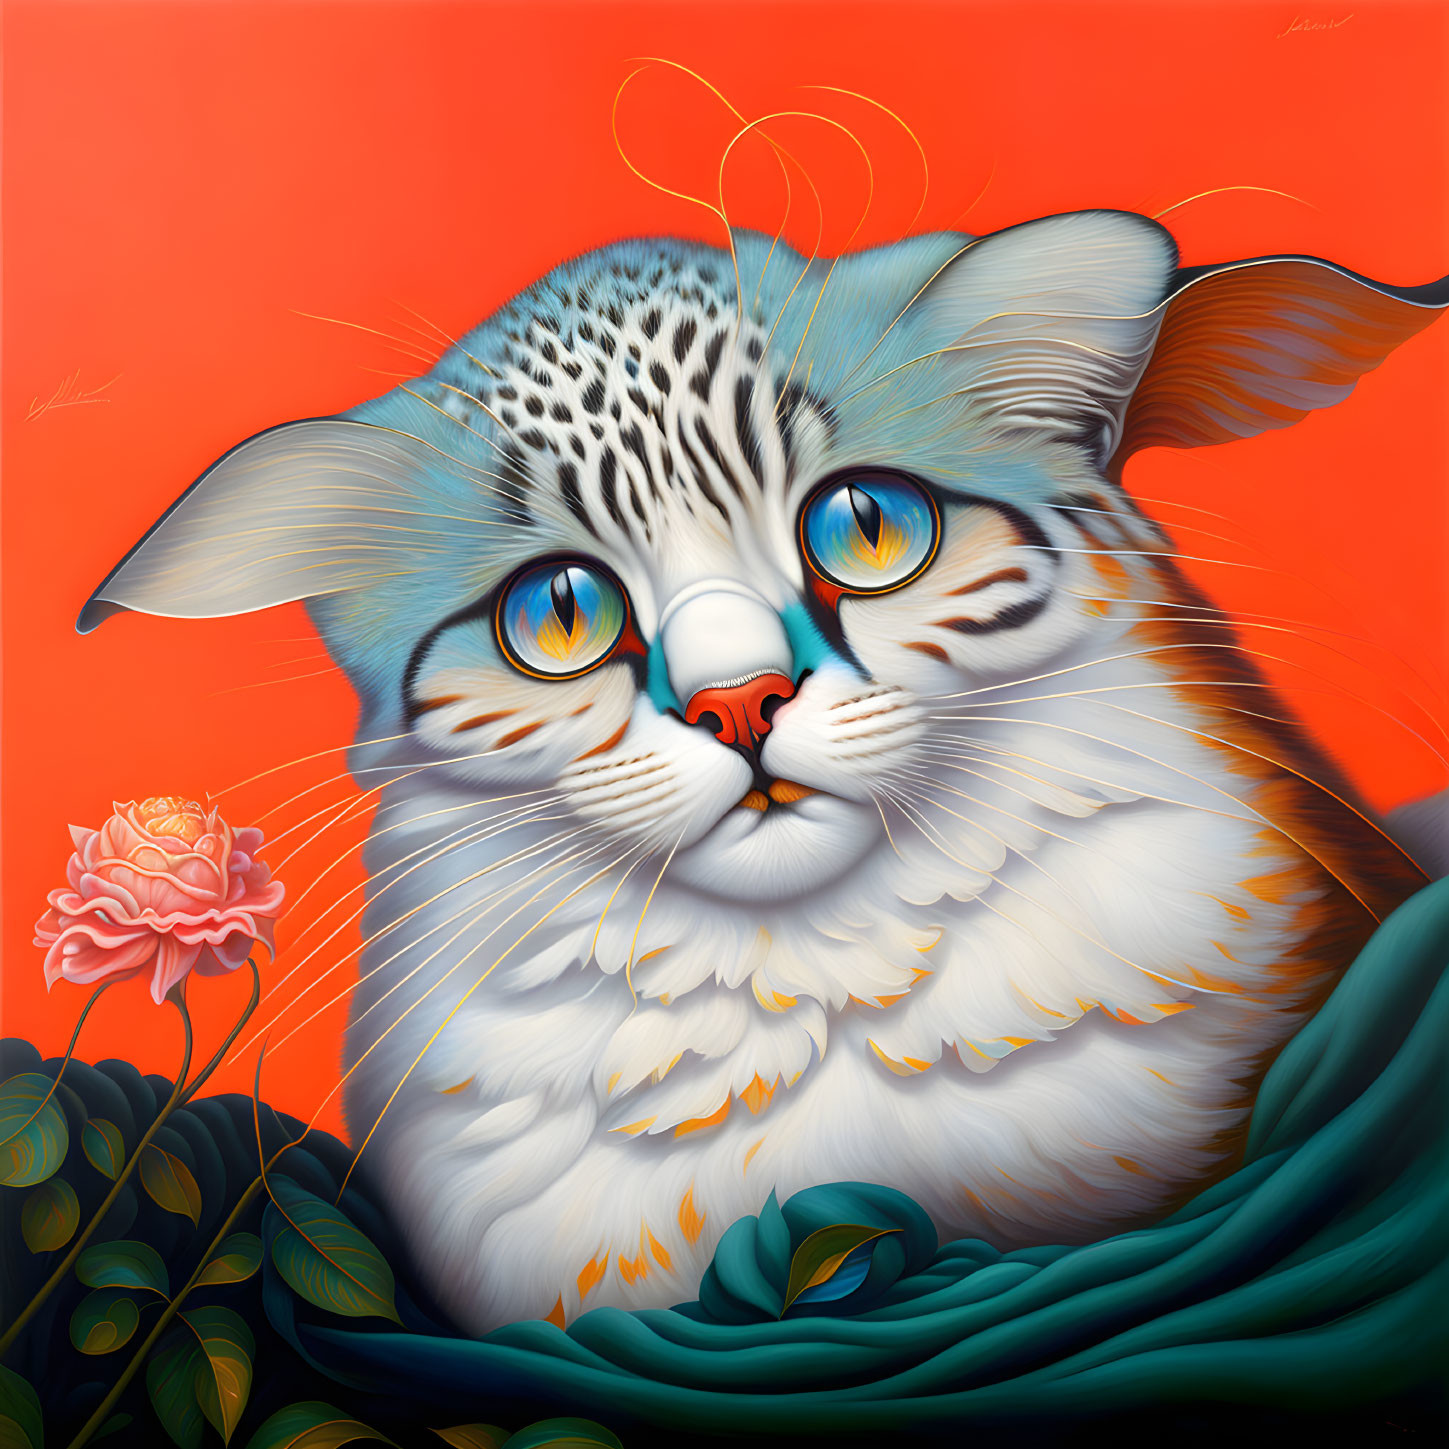 Whimsical cat illustration with oversized eyes and leaf-like fur patterns on orange background